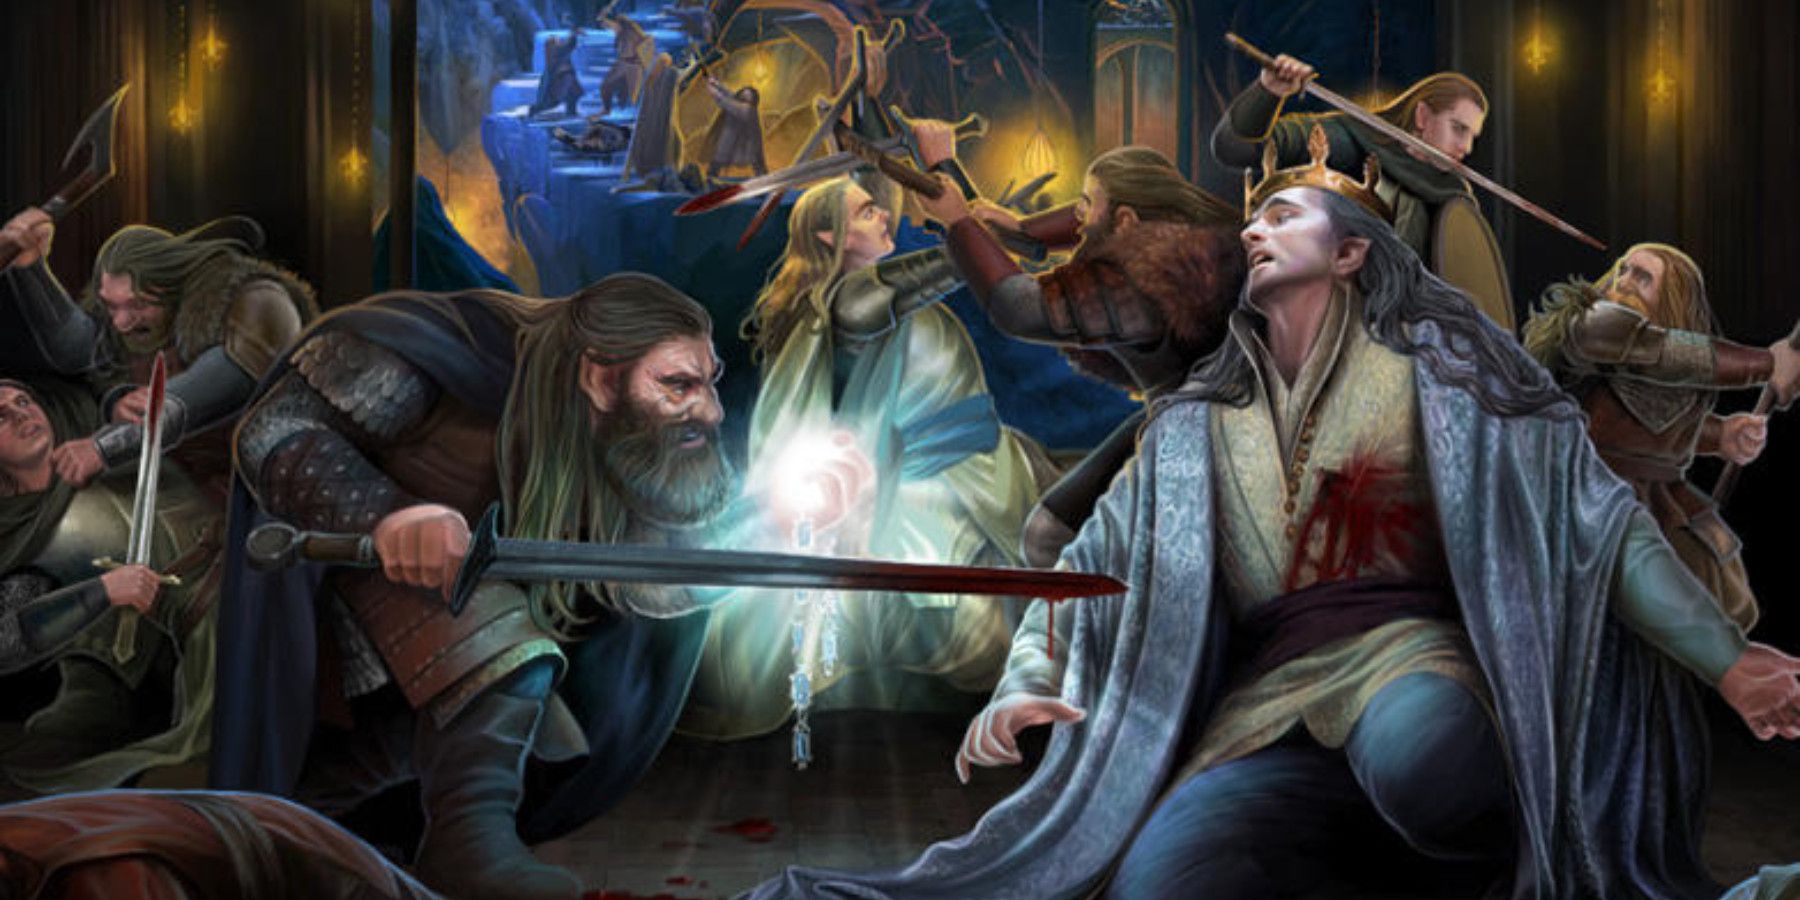 Death of Thingol